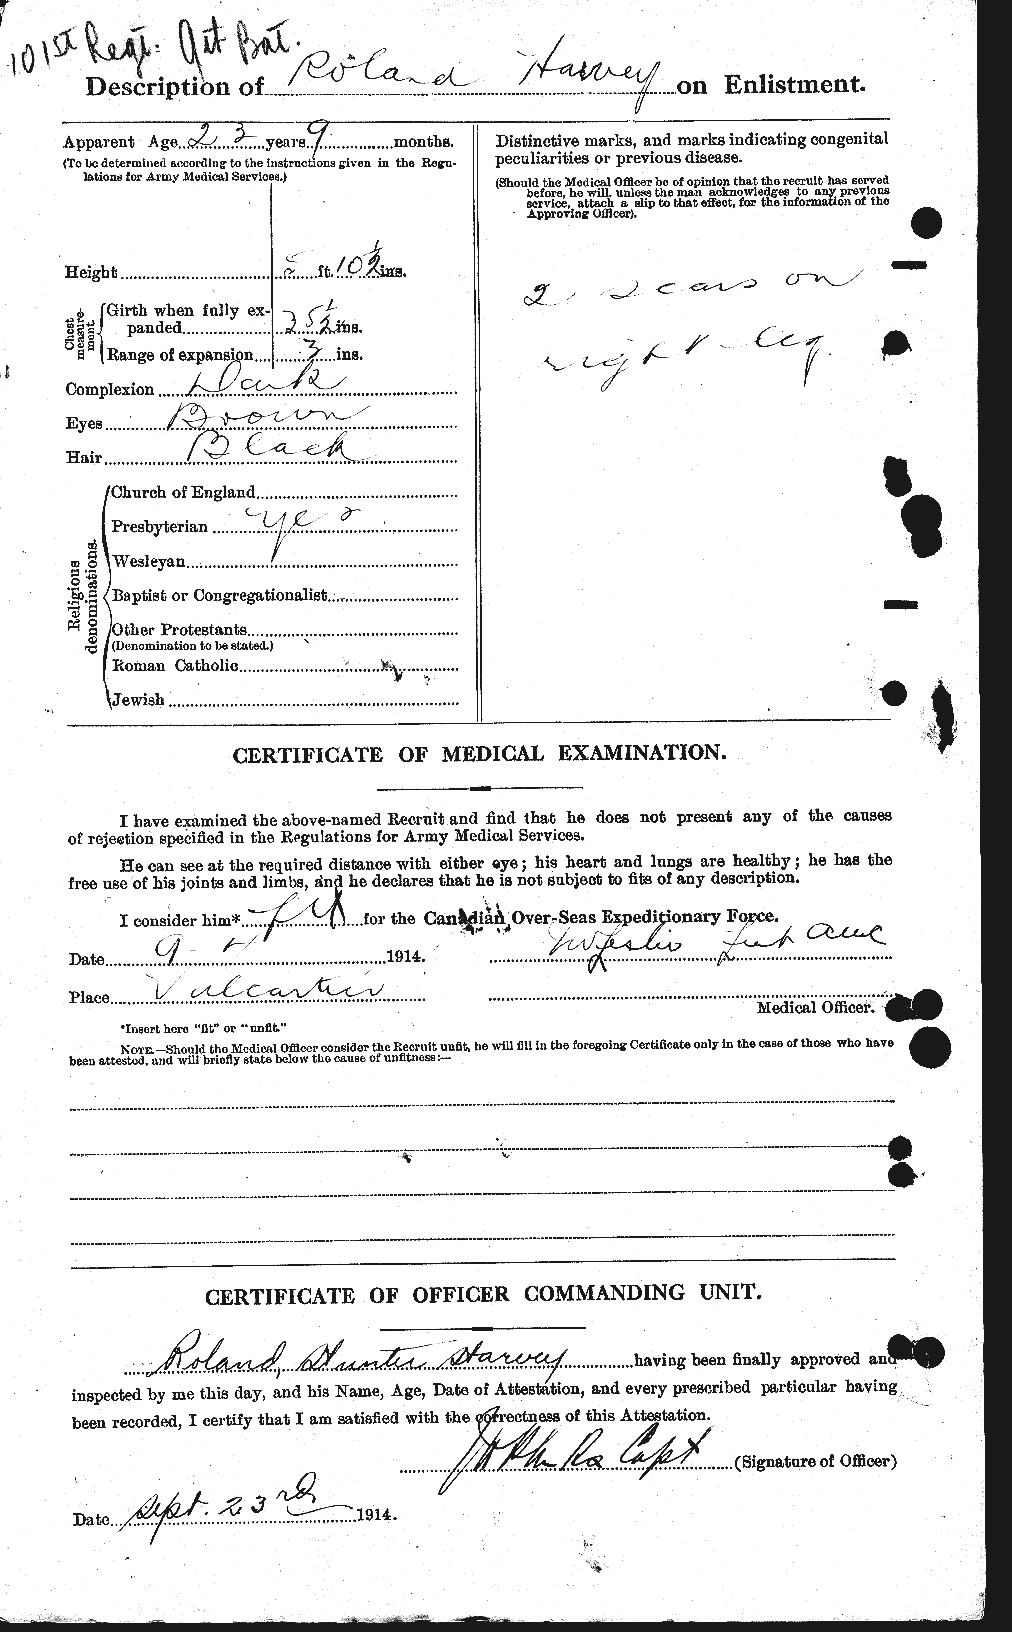 Dossiers du Personnel de la Première Guerre mondiale - CEC 382147b